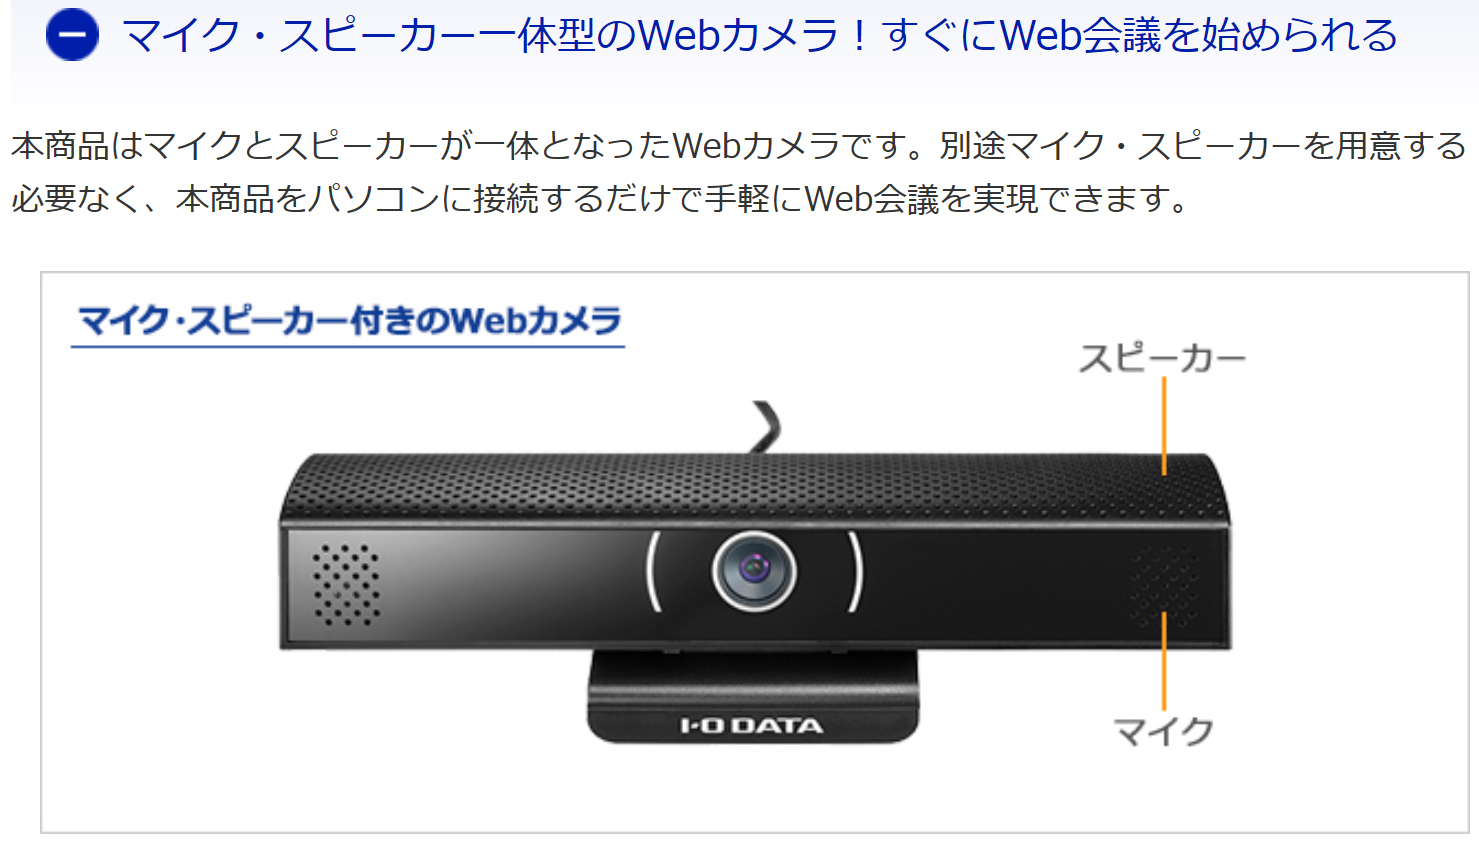 【楽天市場】【 01/22AM 在庫潤沢 】 アイ・オー・データ機器製 PC Webカメラ マイク・スピーカー一体型USBカメラ ZIO